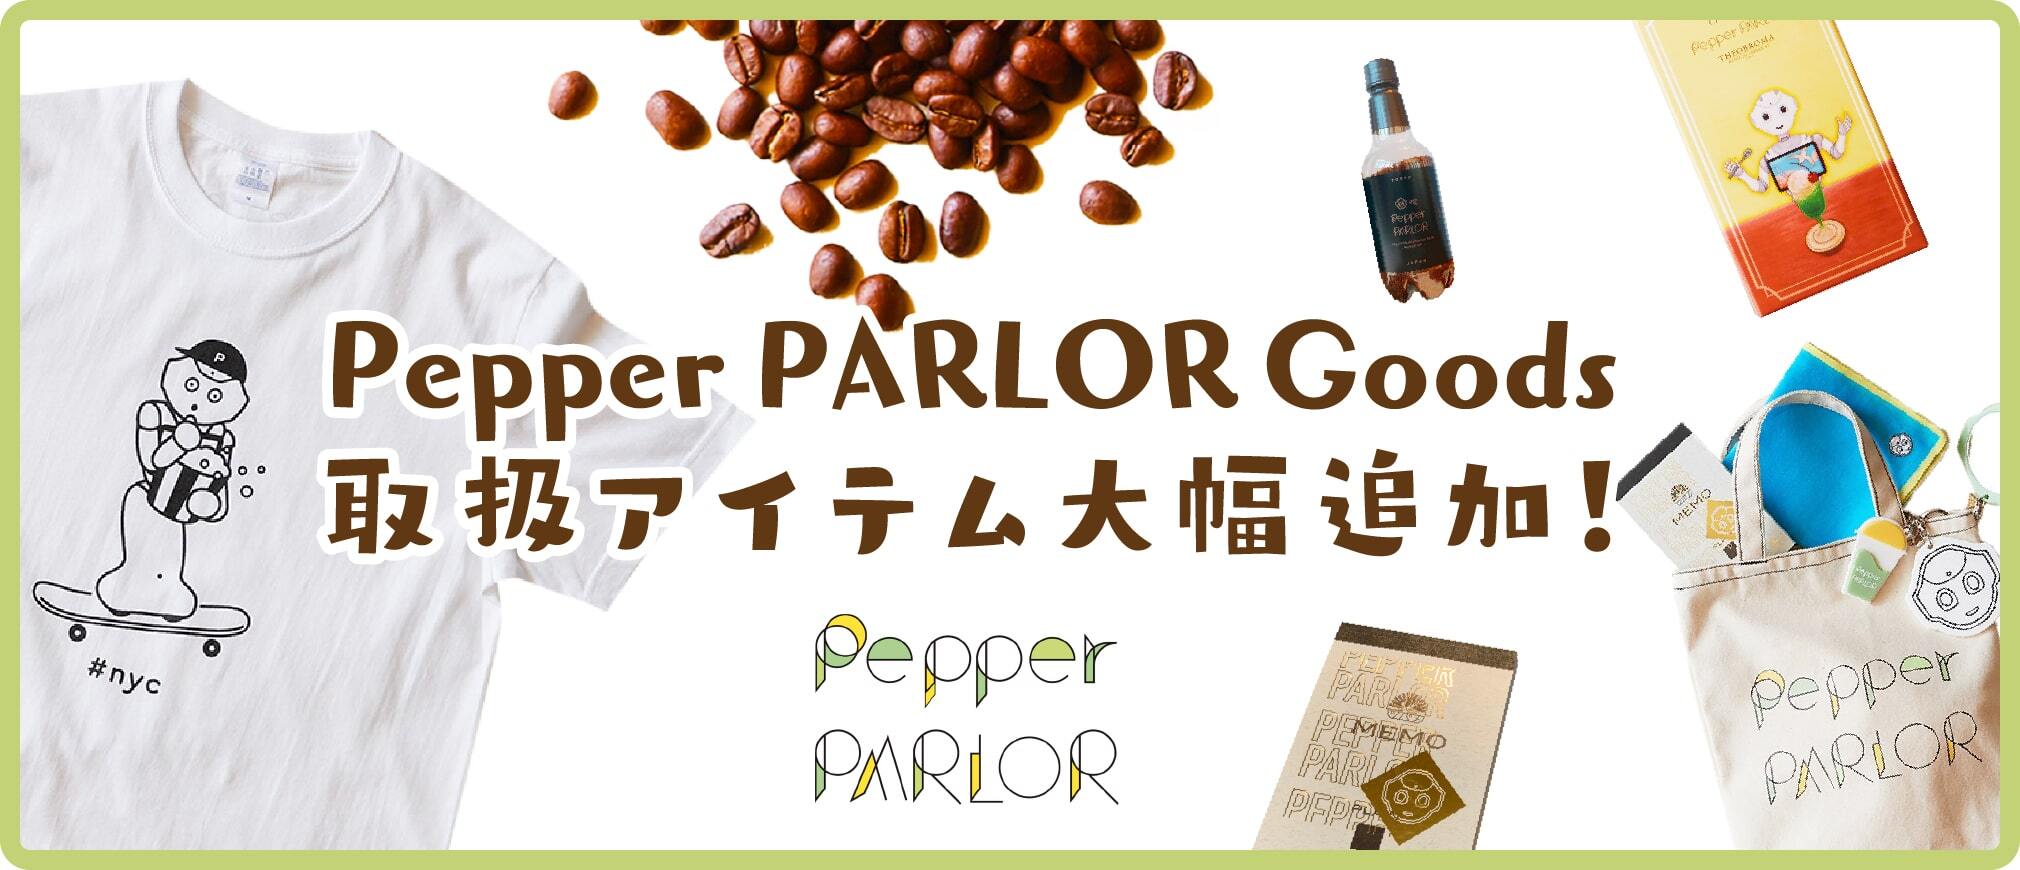 Pepper PARLOR GOODS